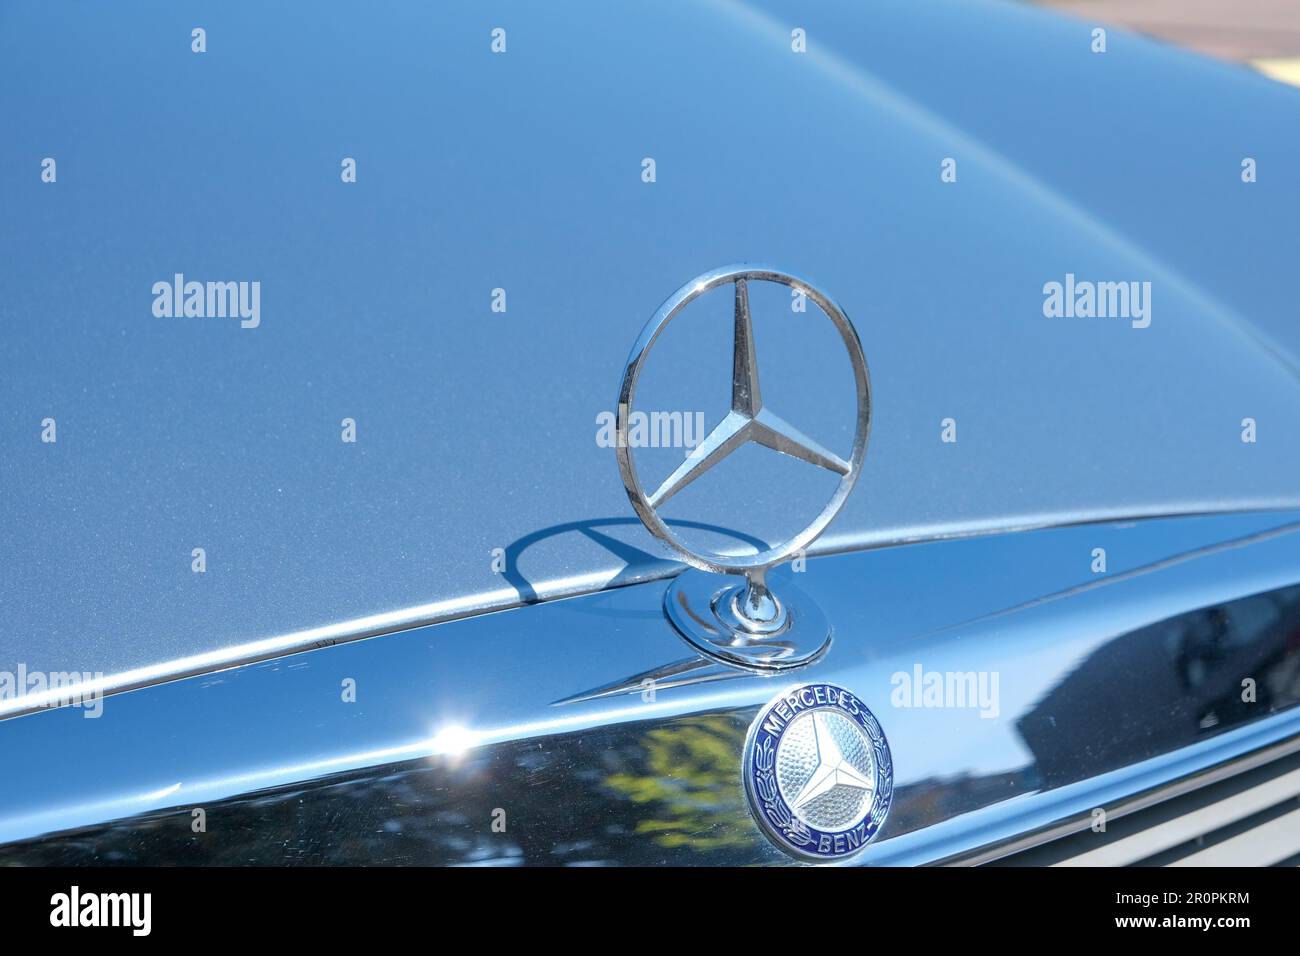 Gros plan de l'ancien logo en forme d'étoile métallique de Mercedes Benz sur le capot de la voiture. Mise au point sélective de l'ancien logo Mercedes. Banque D'Images